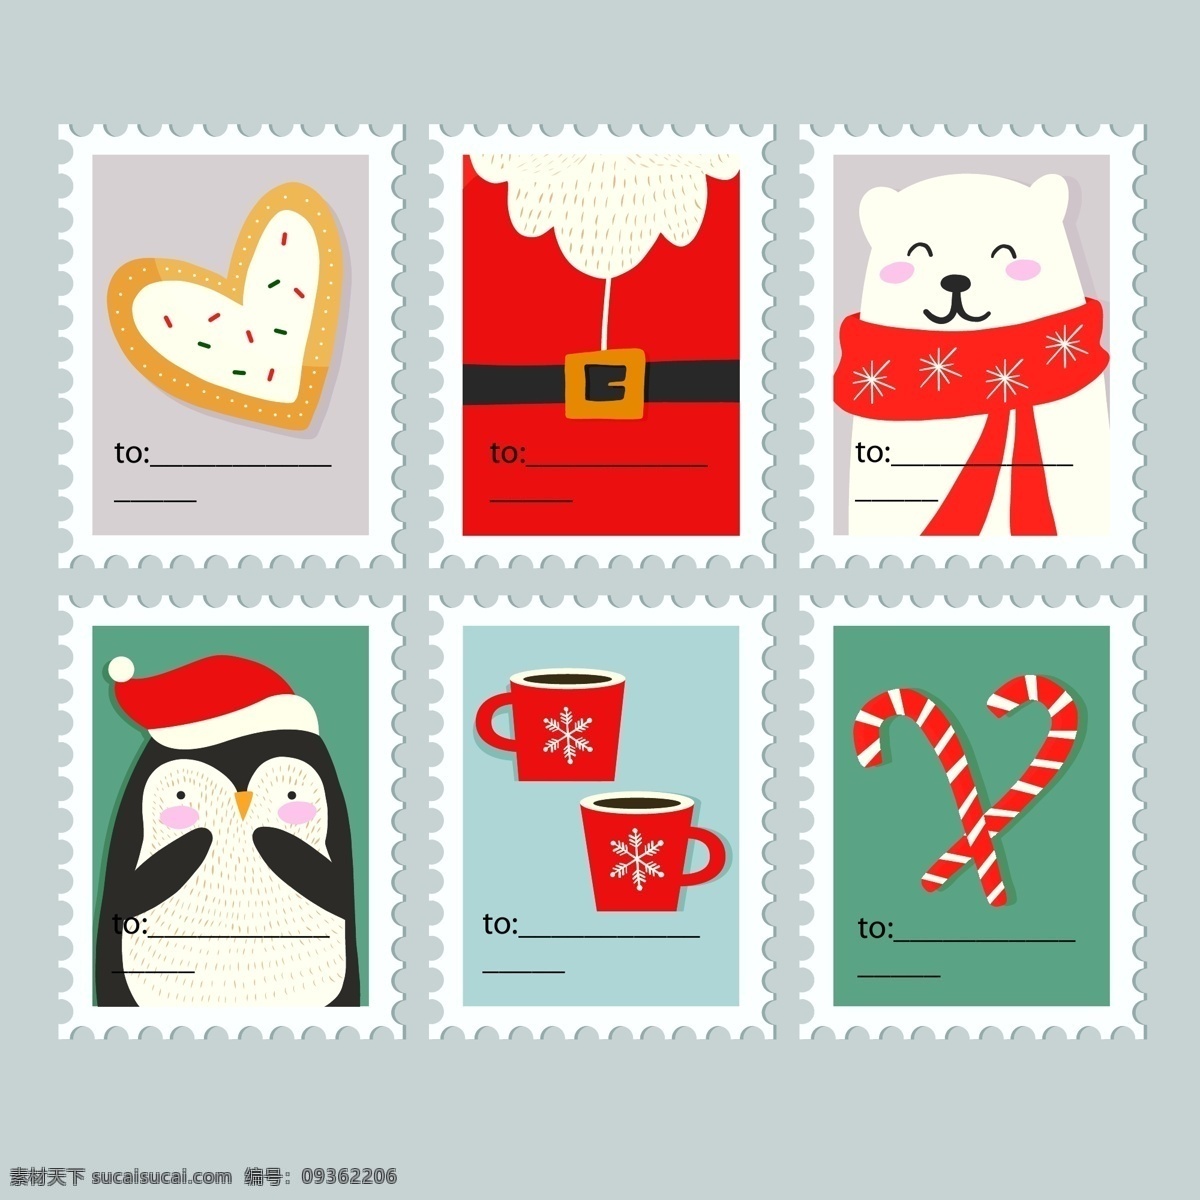 邮票 边框 圣诞节 标签 彩色 心形 矢量素材 企鹅 圣诞老人 白熊 咖啡杯 糖果 明信片